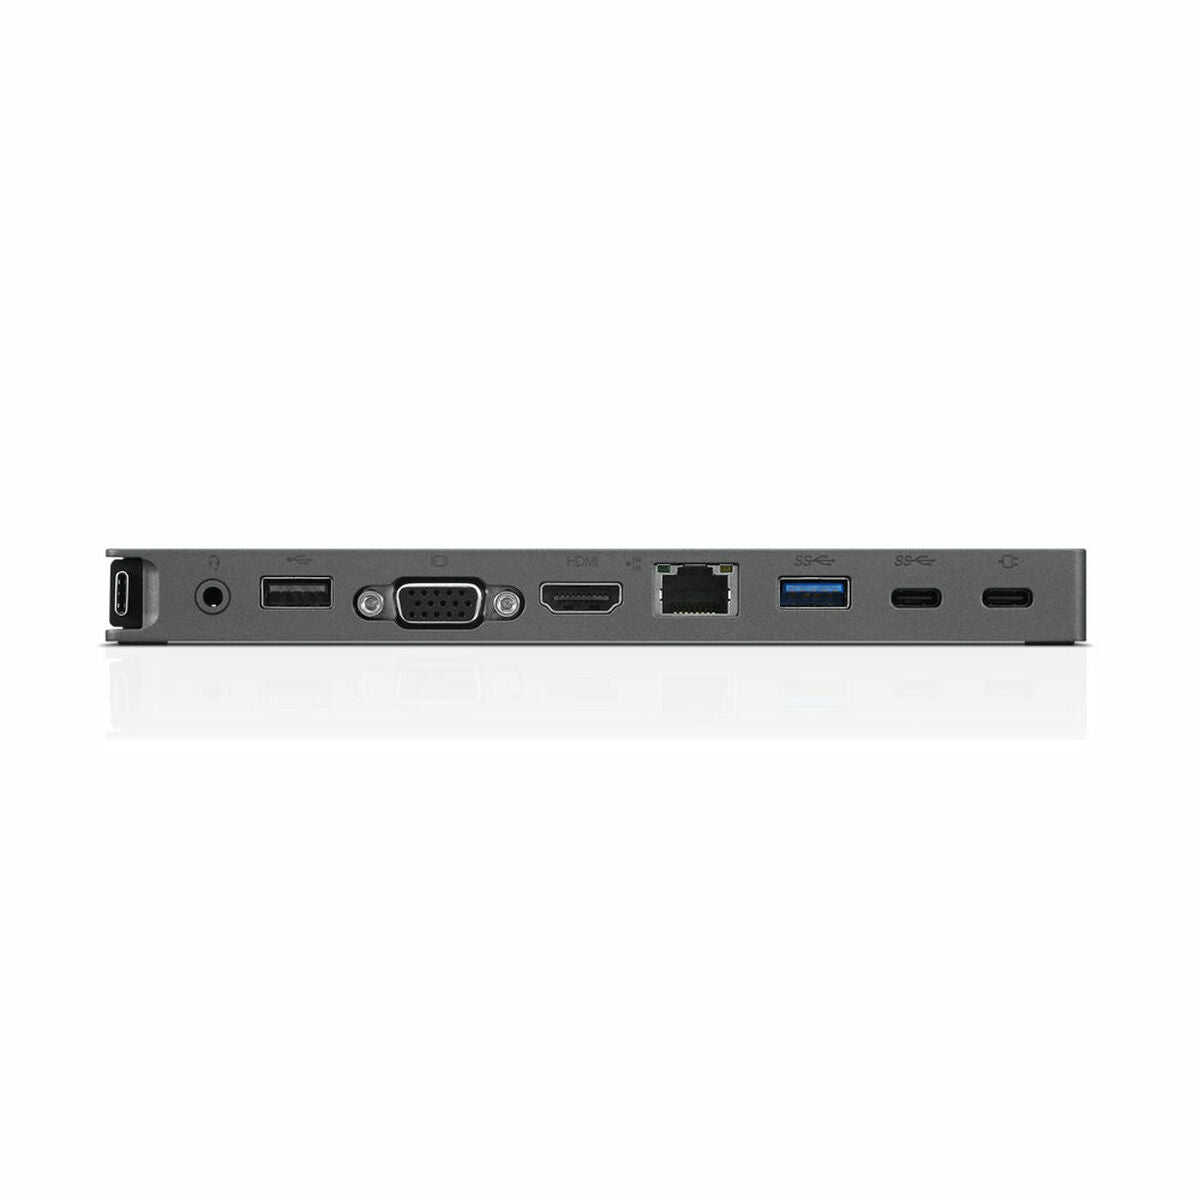 USB-разветвитель Lenovo 40AU0065EU           Серый